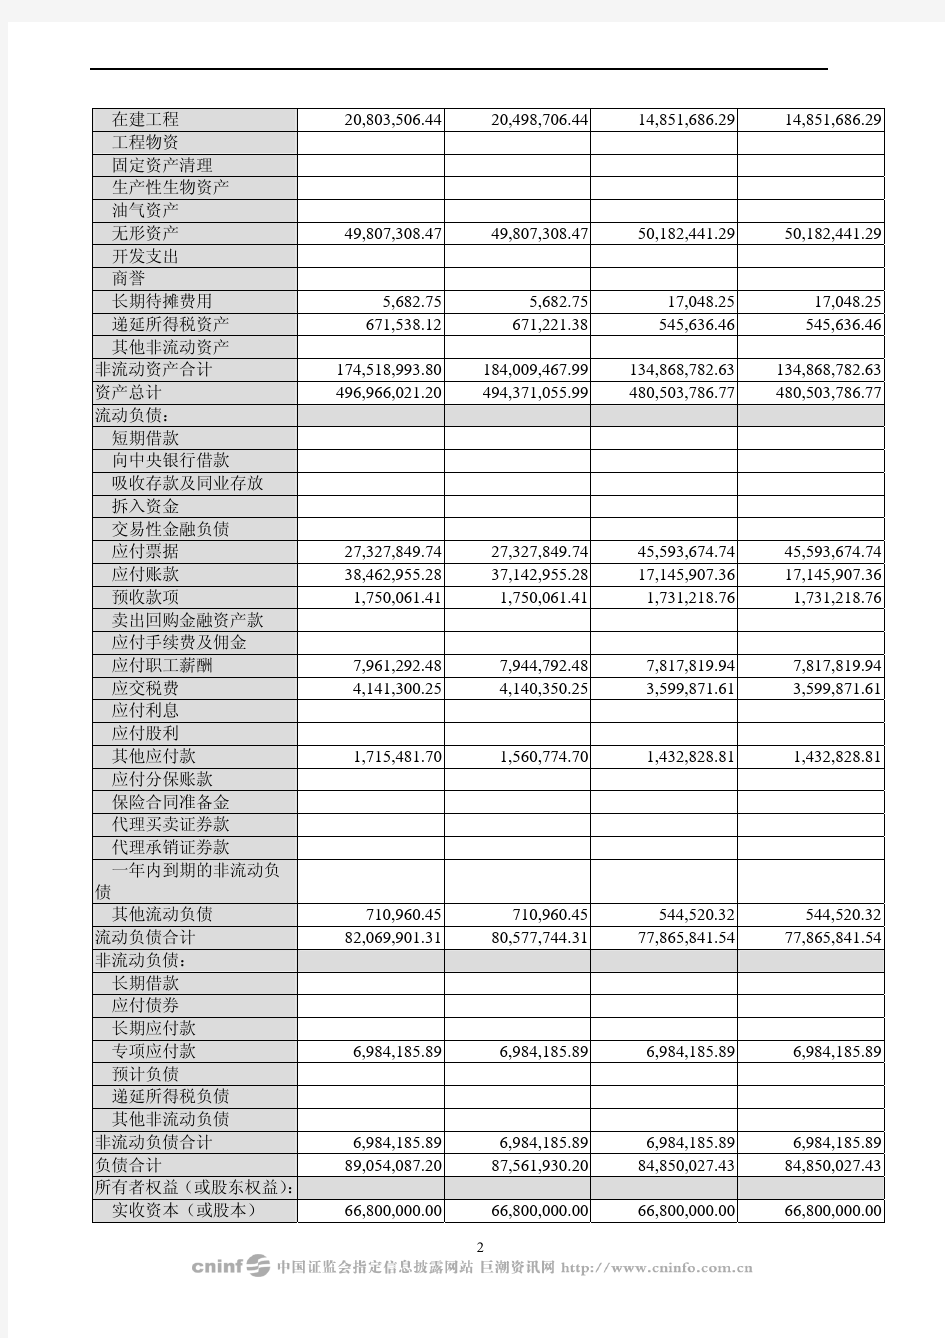 浙江帝龙新材料股份有限公司2009年半年度财务报告